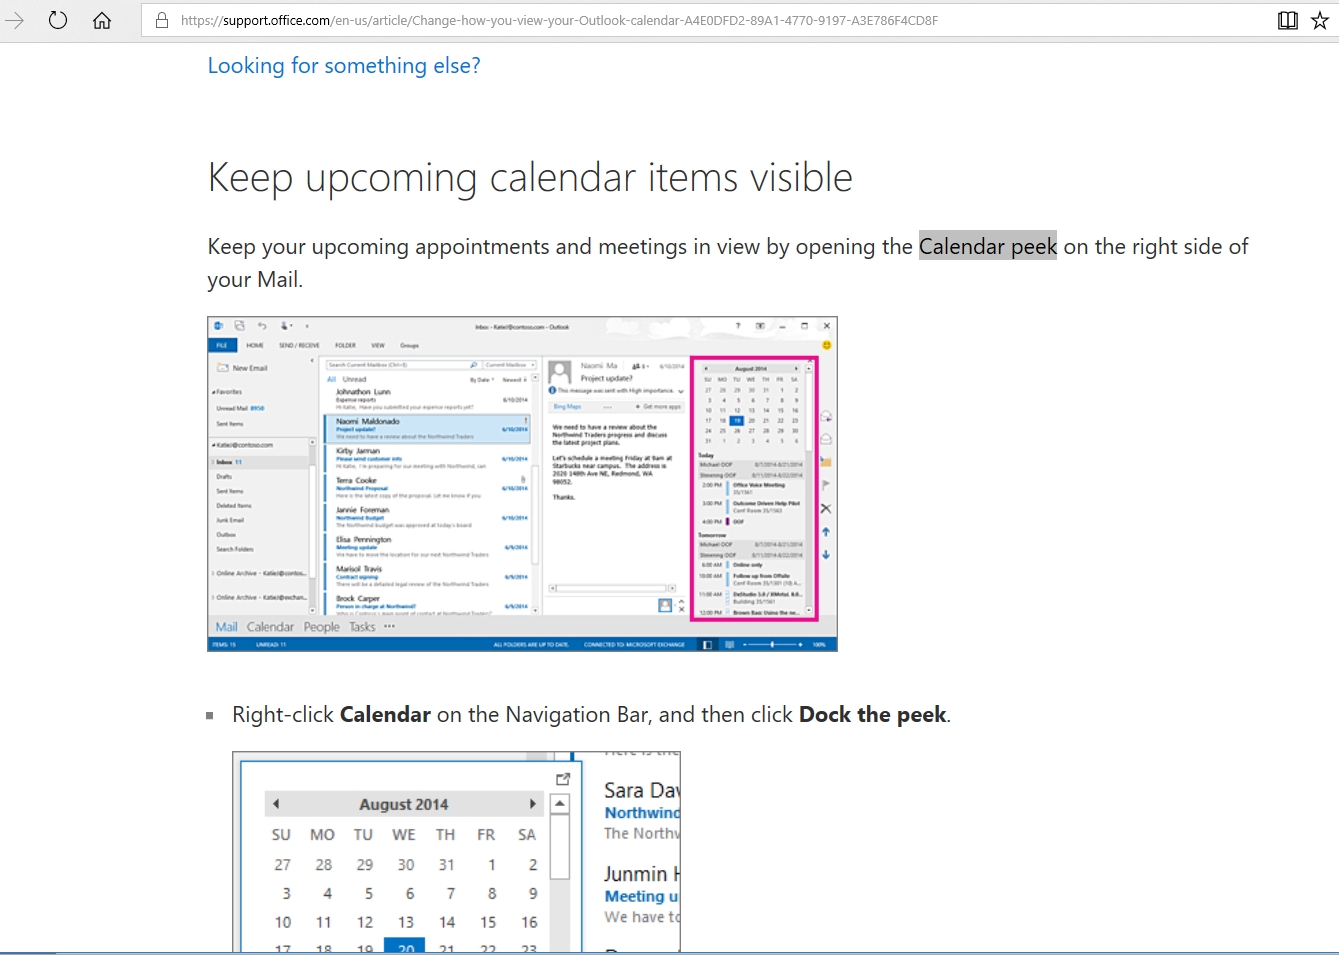 Add Calendar Dock A Peek On Outlook 2016 For Mac Powerfulgw